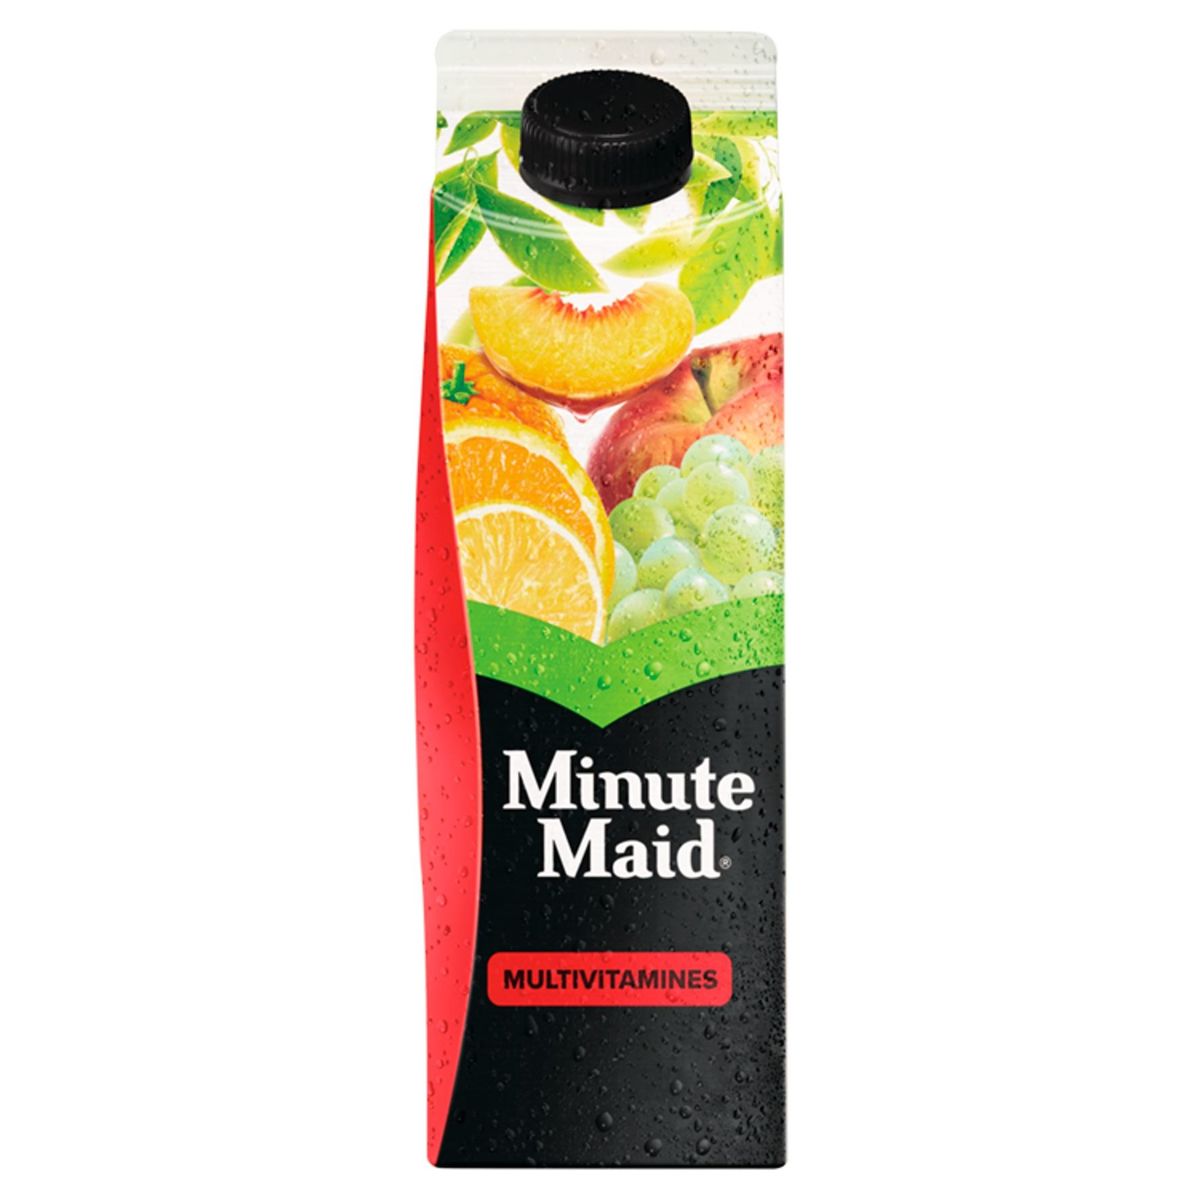 Minute Maid Multivitamines 1 L